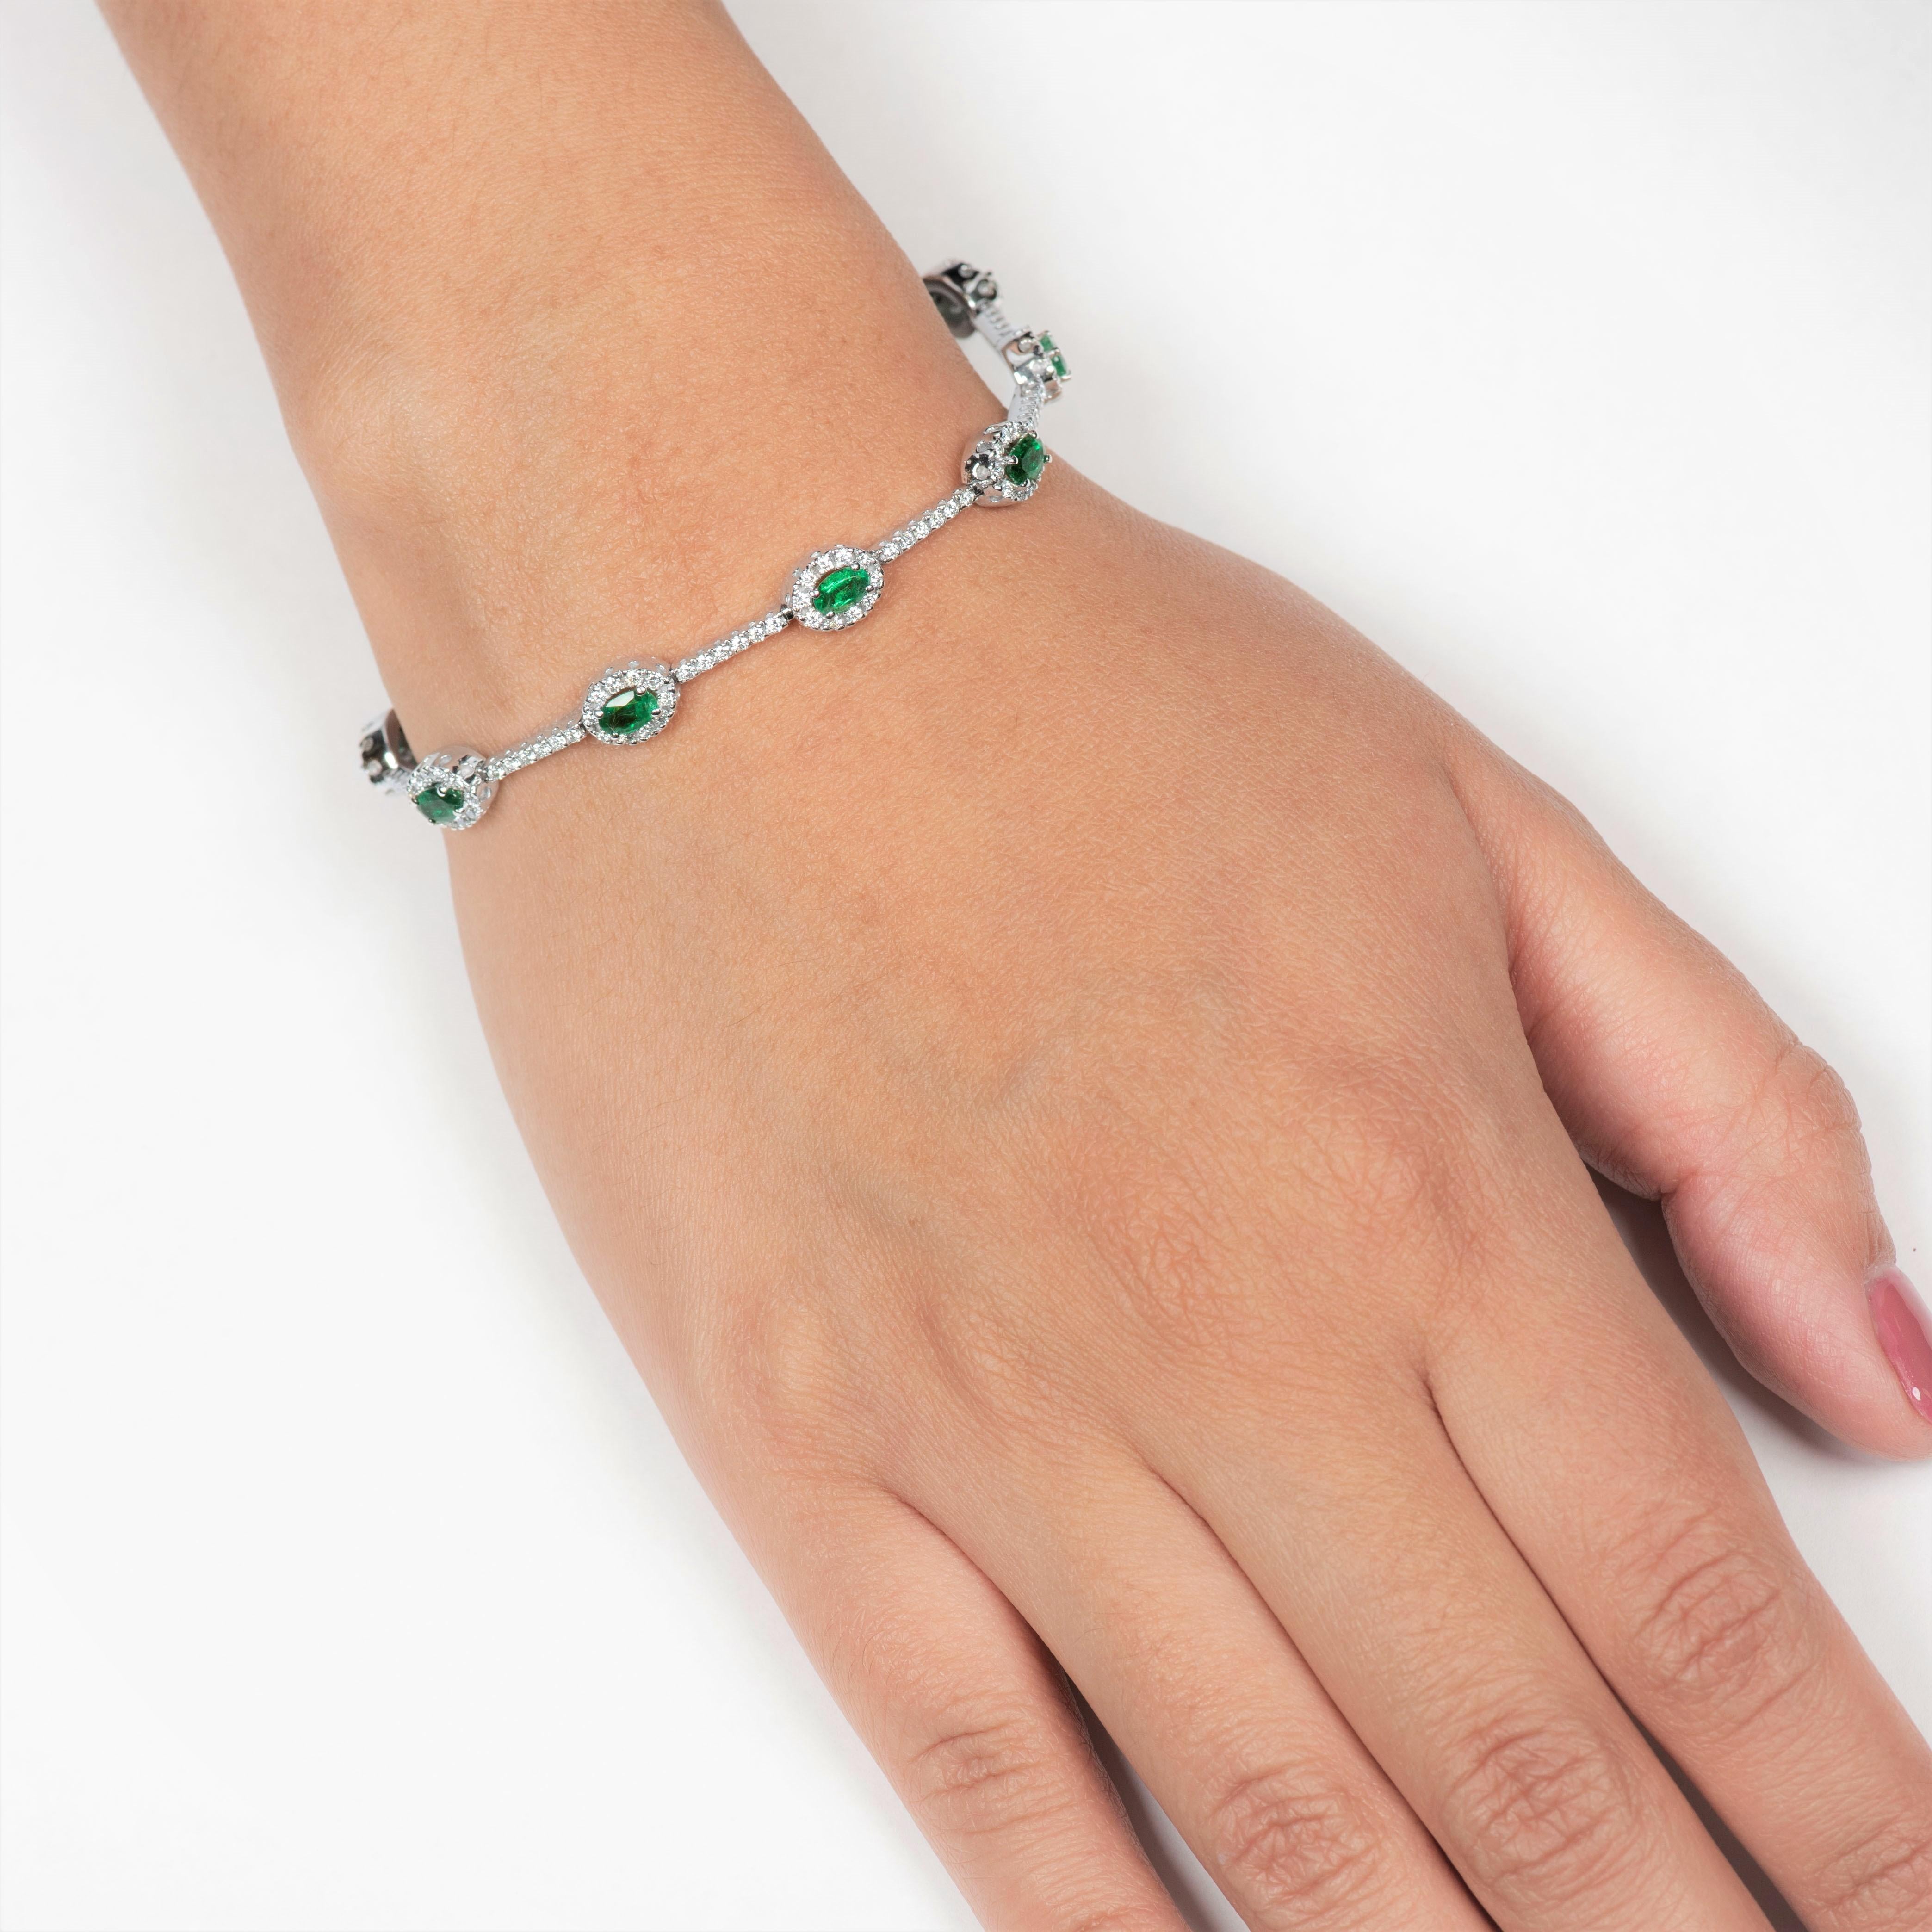 Dieses wunderschöne Smaragdarmband von 2,20 Karat besteht aus 10 perfekt aufeinander abgestimmten Smaragden im Ovalschliff, die von einem Halo aus 1,37 Karat runden Diamanten im Brillantschliff (180 Diamanten) umgeben sind. Das Armband misst eine